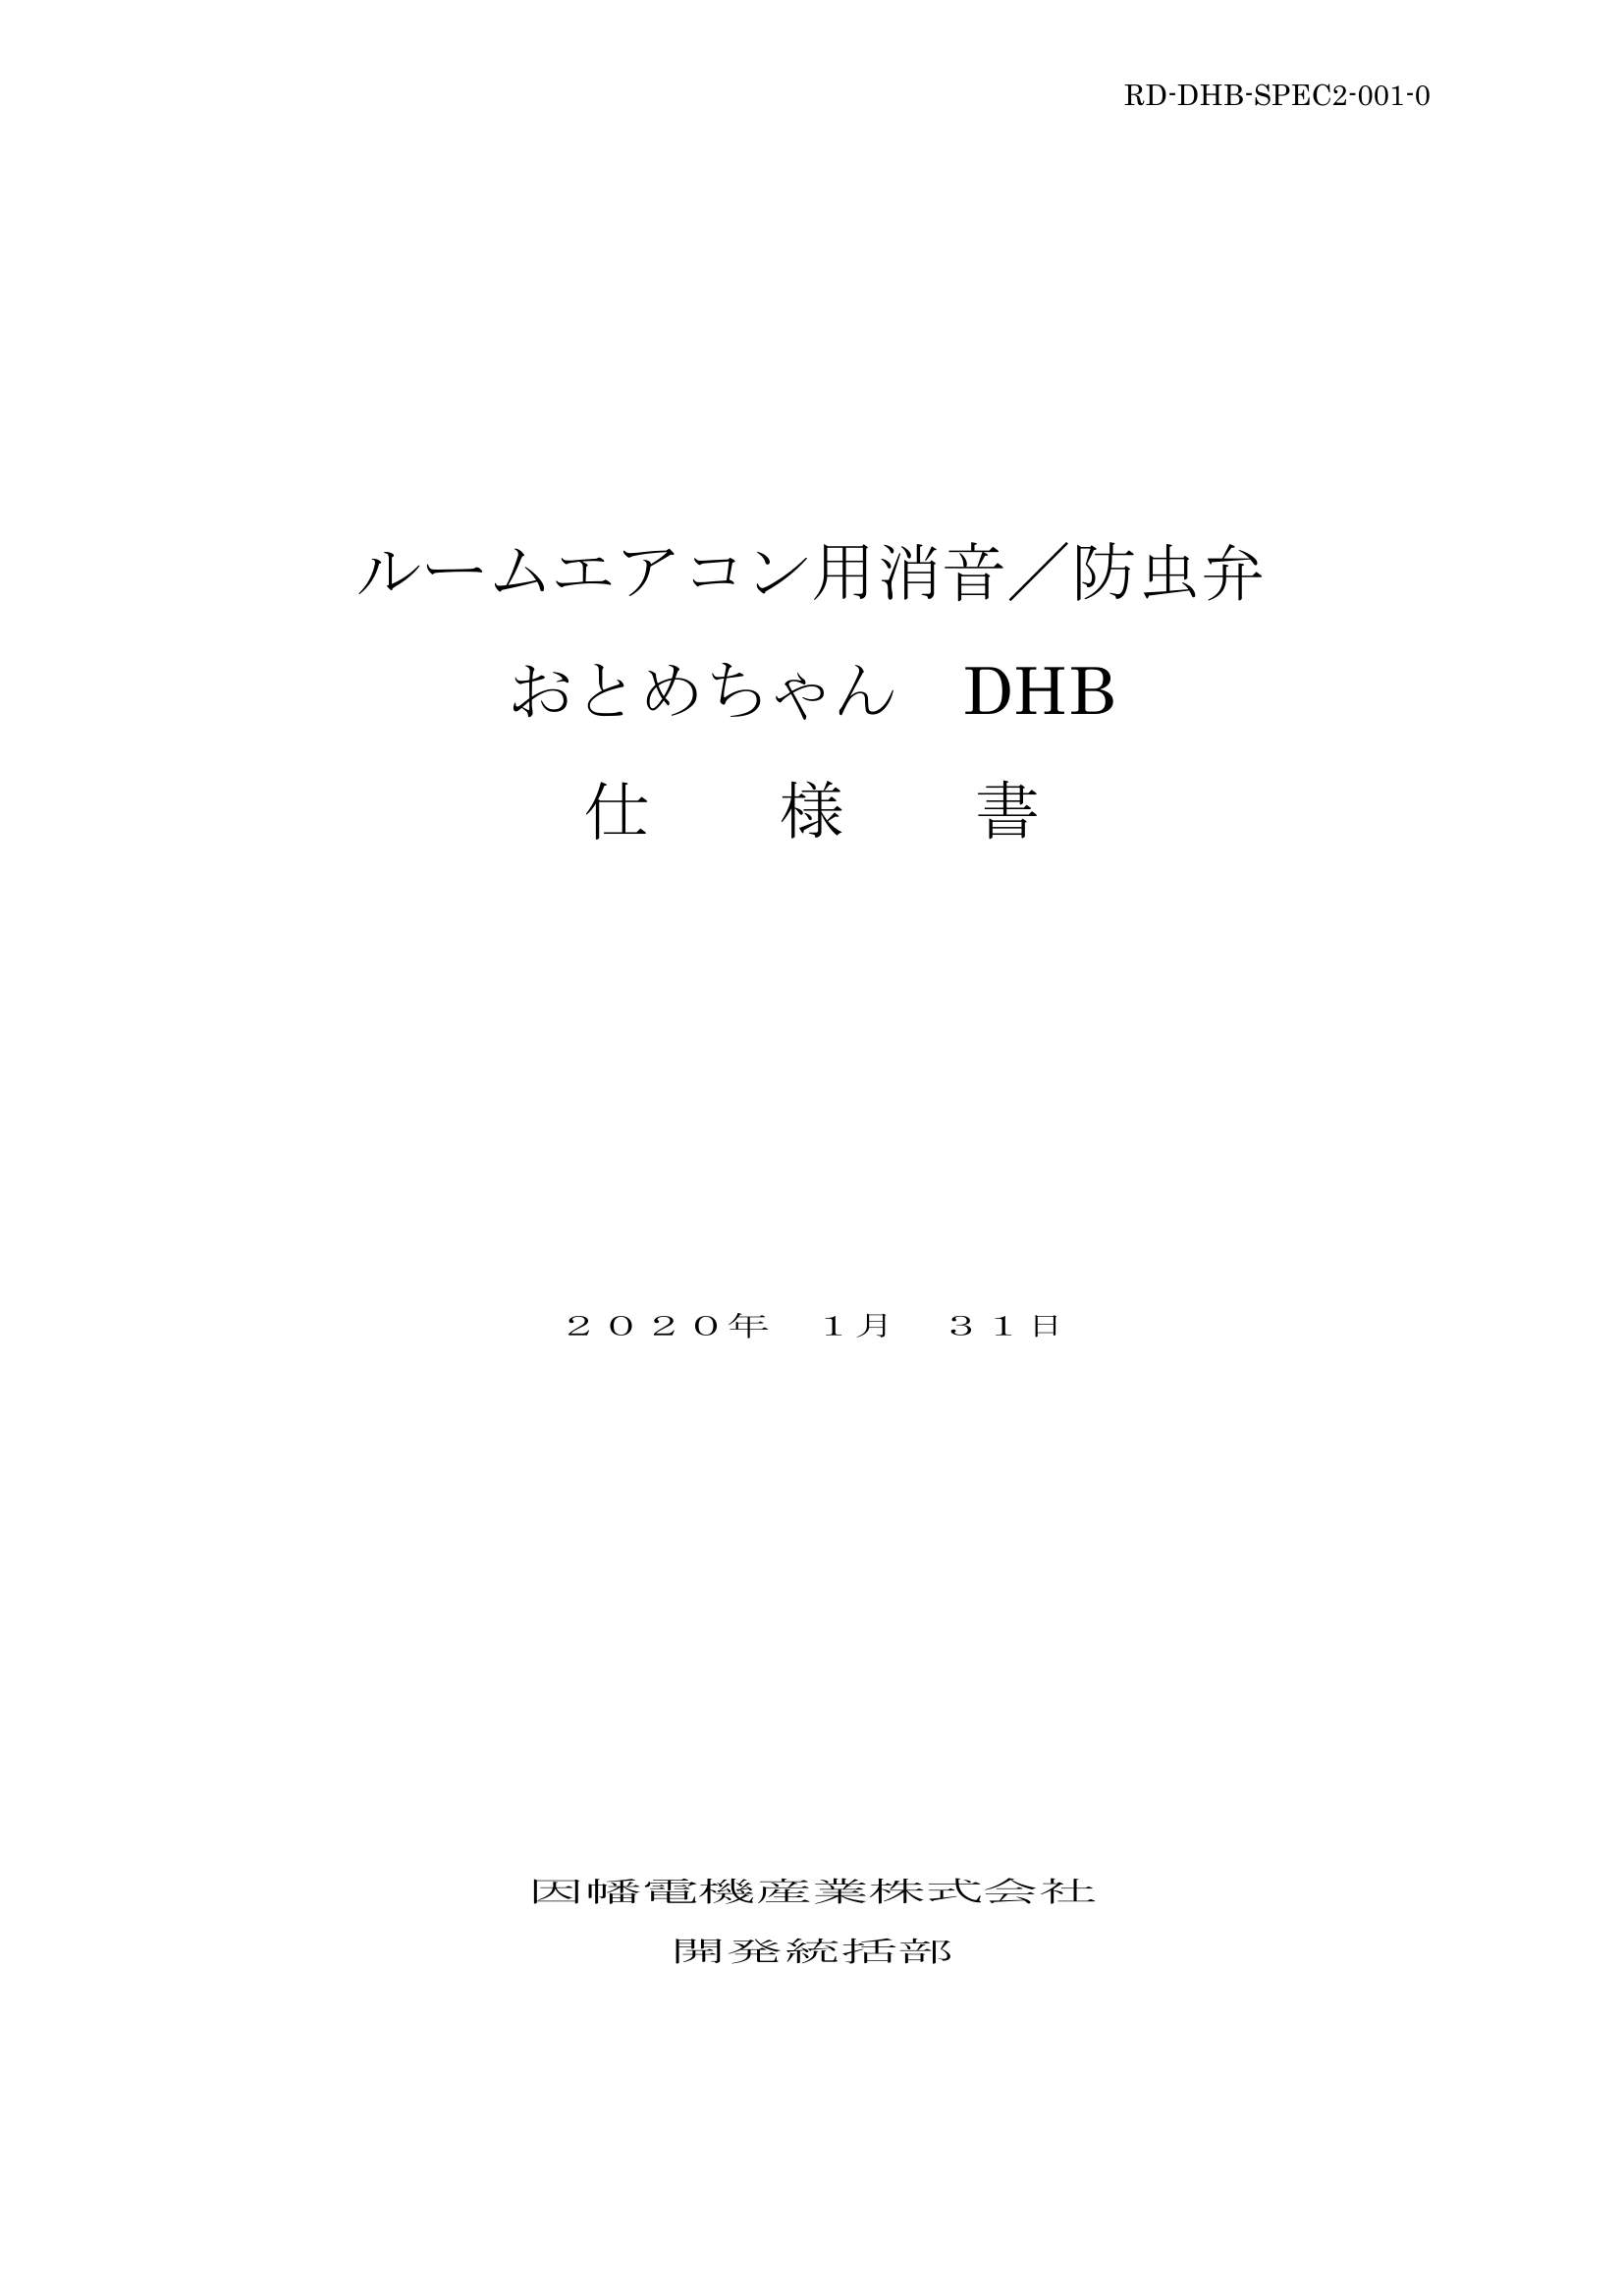 DHB_仕様書_20200131.pdf